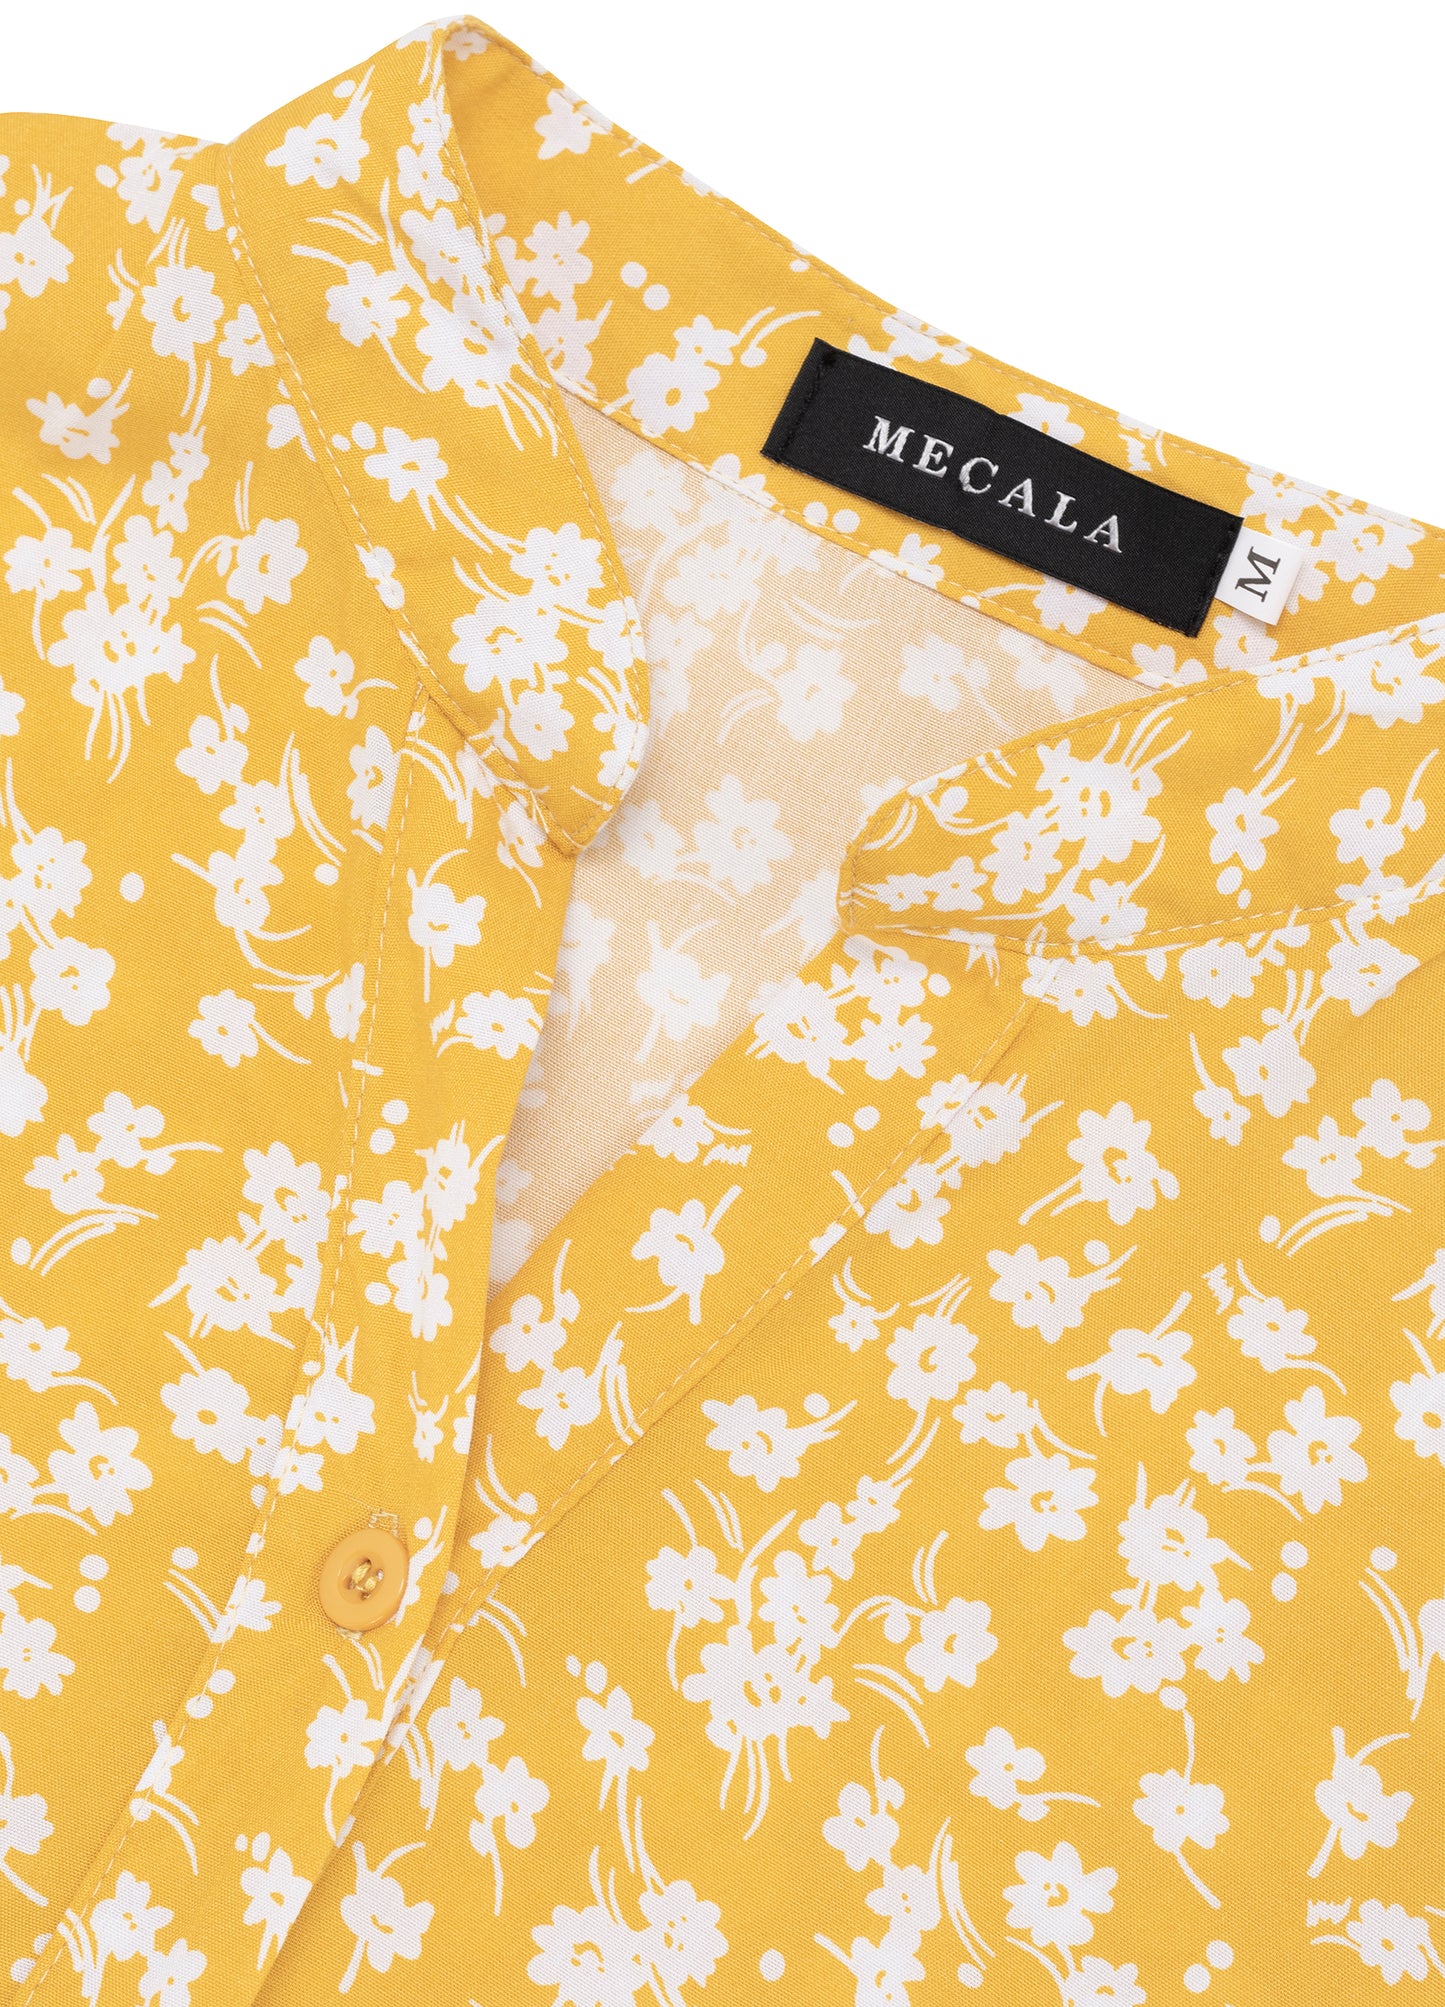 MECALA Women's Summer Floral Print V-Neck Ditsy Floral Dress